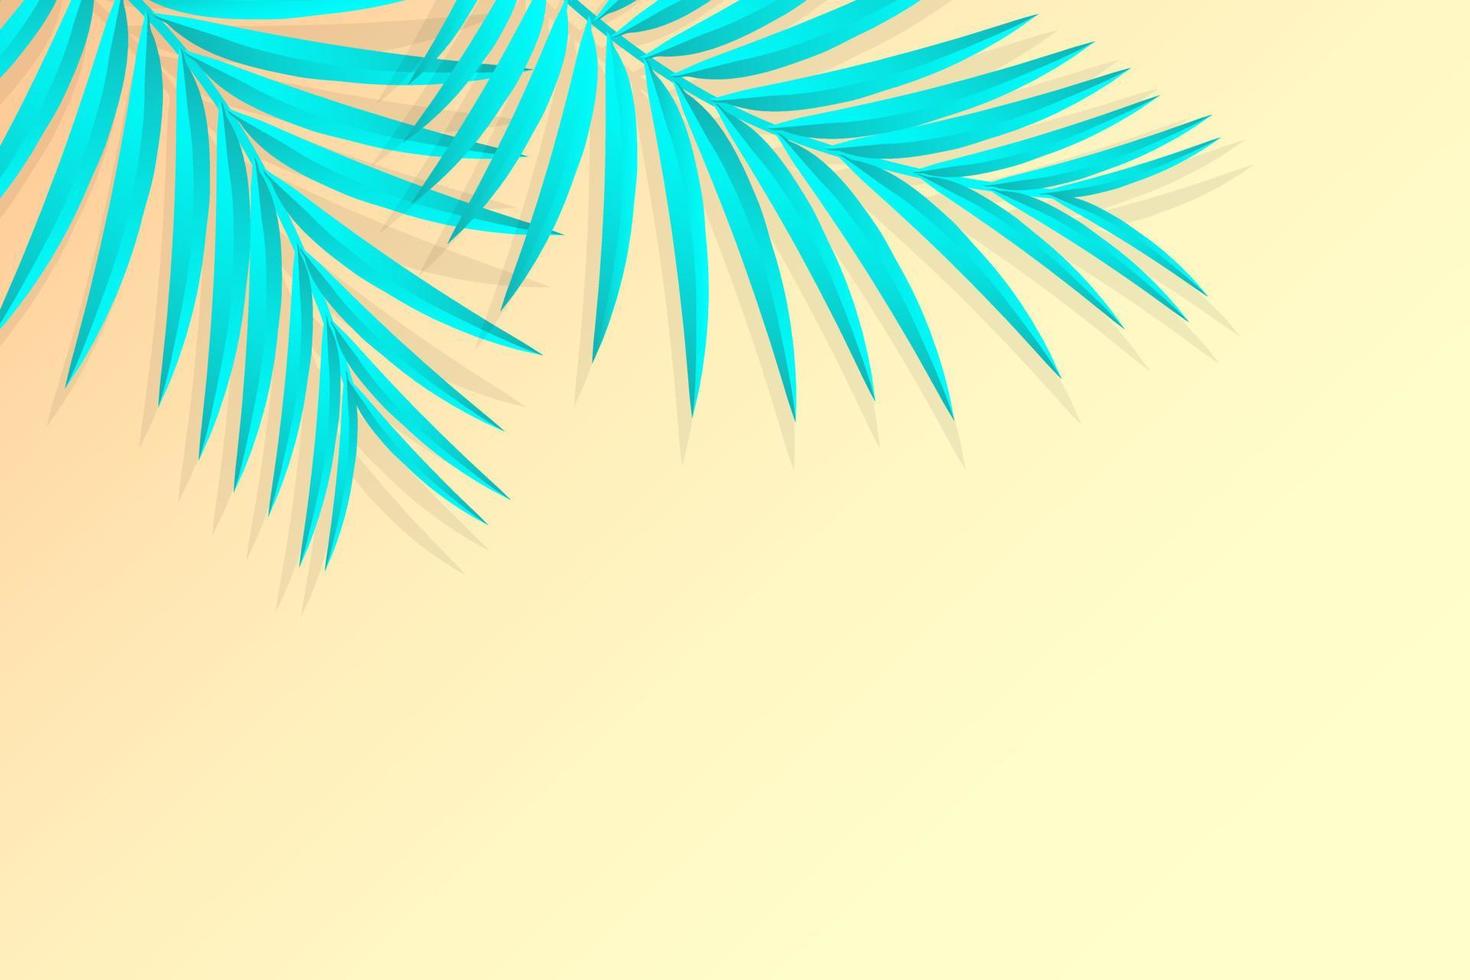 ramas de palmeras tropicales azules sobre el fondo amarillo. diseño vectorial de verano. vector